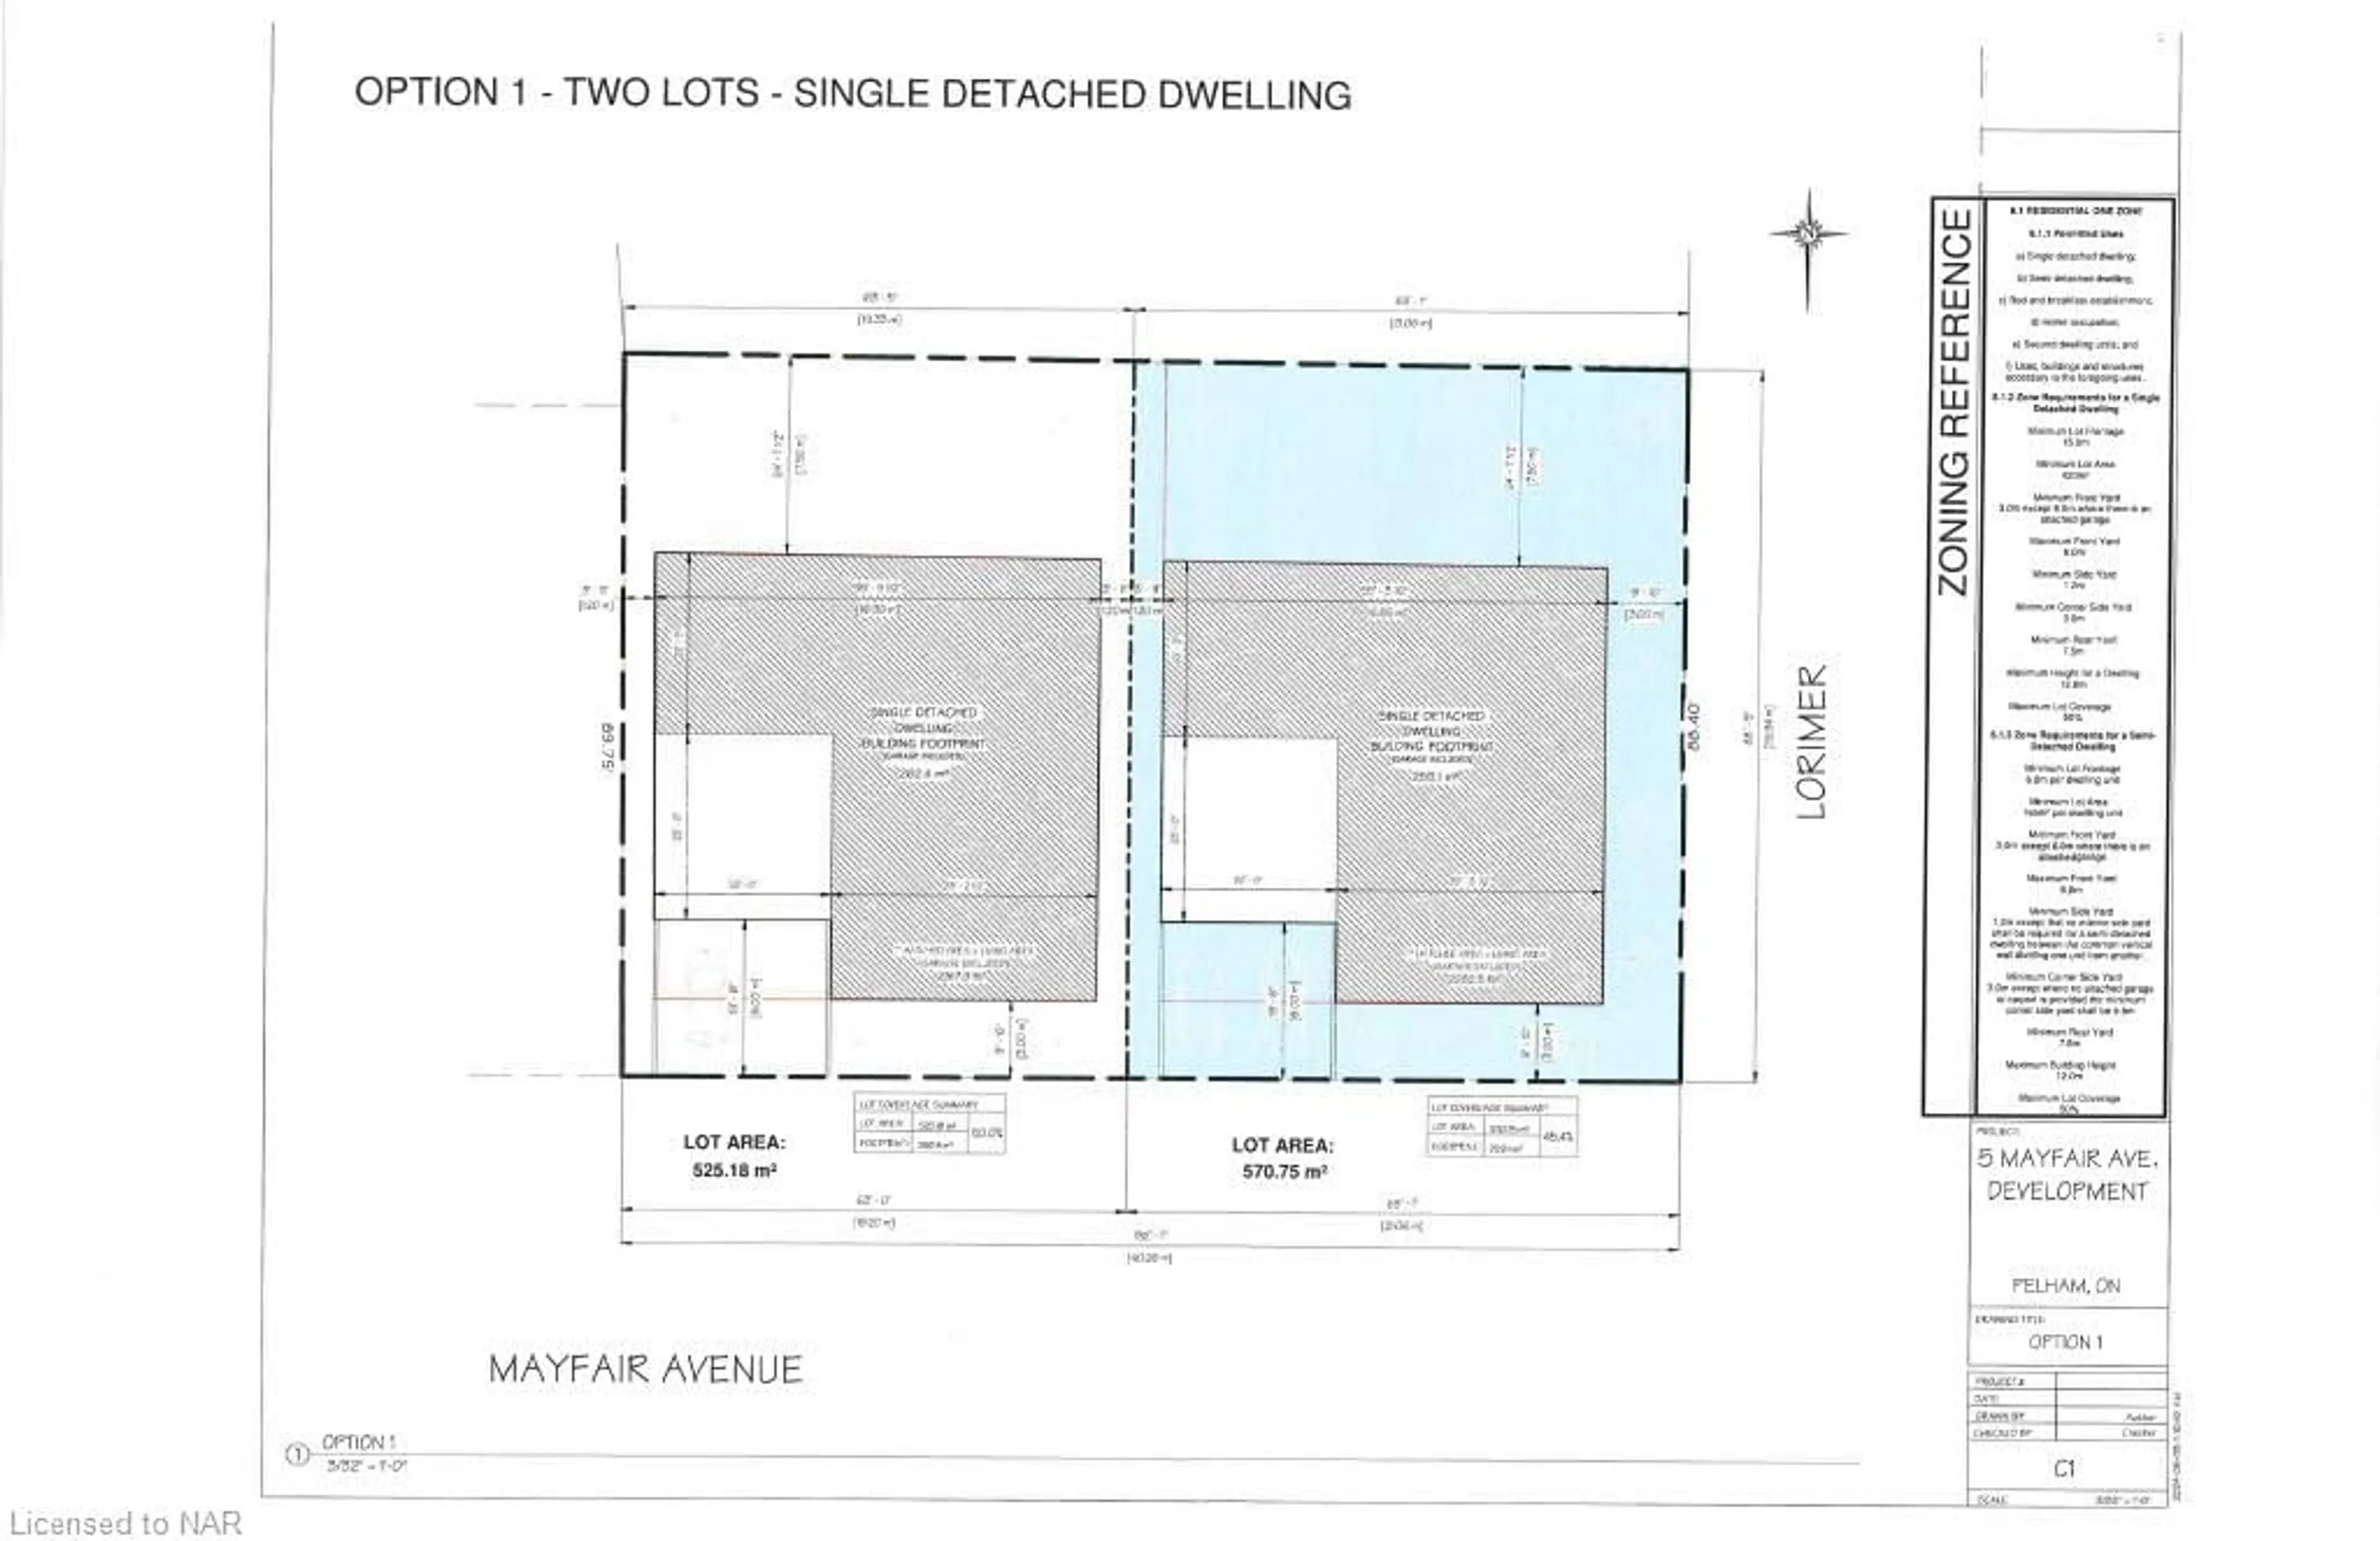 Floor plan for 5 Mayfair Ave, Pelham Ontario L0S 1E0